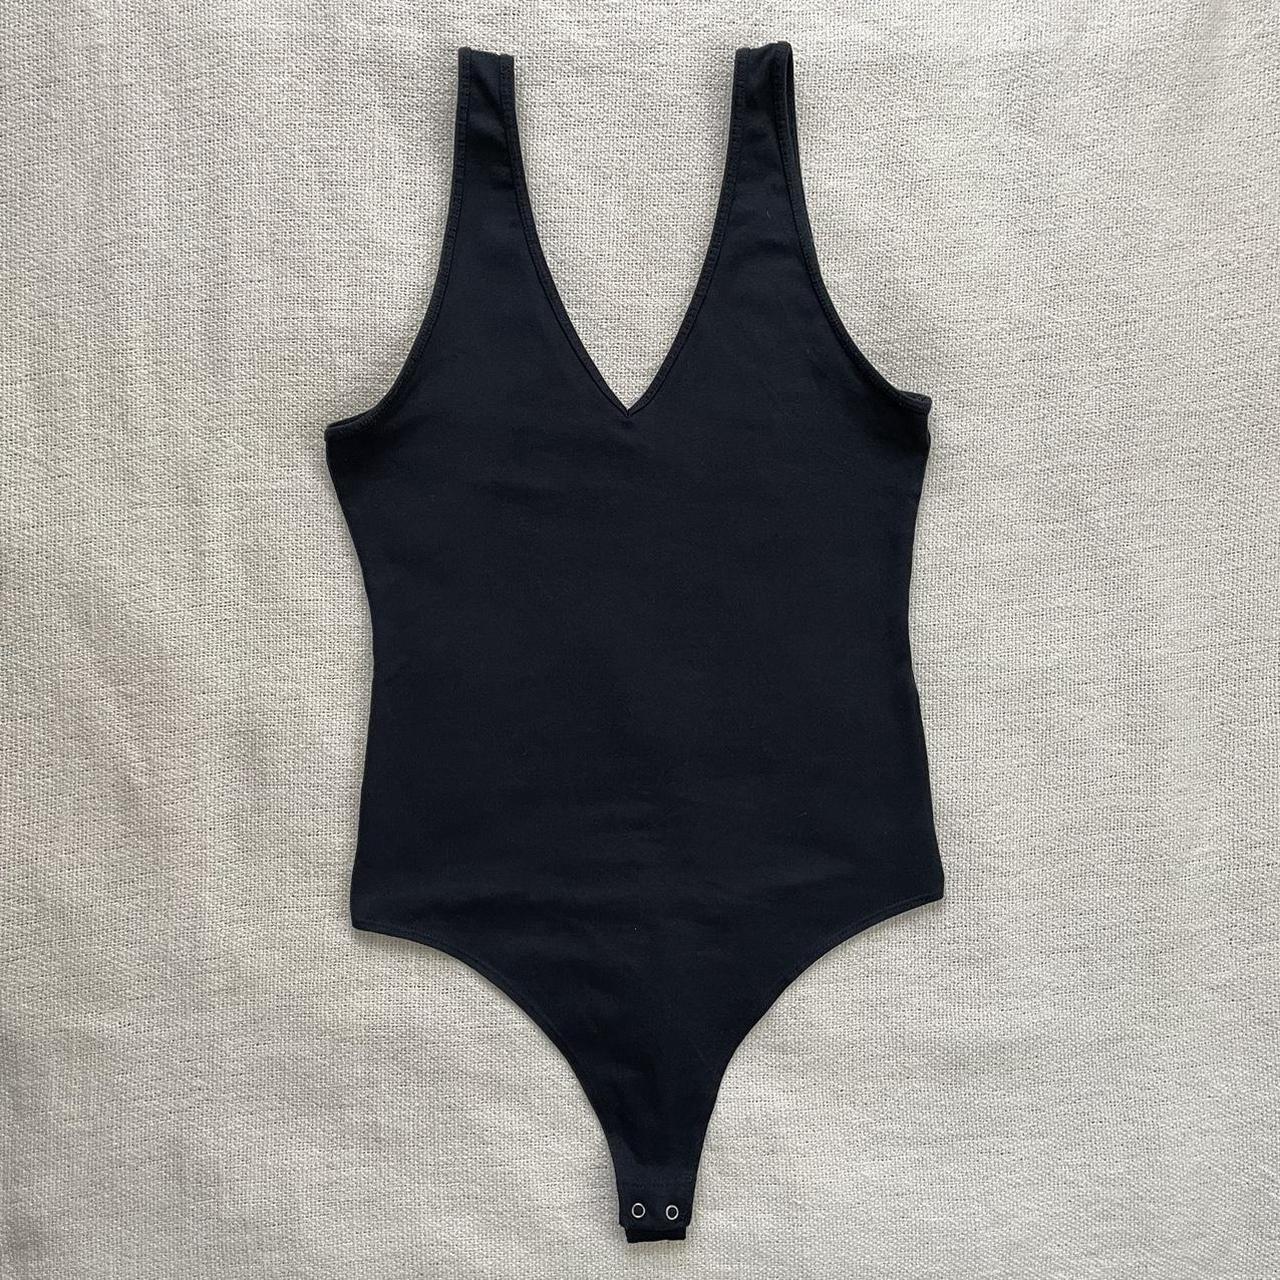 Abercrombie & Fitch Women's Black Bodysuit | Depop